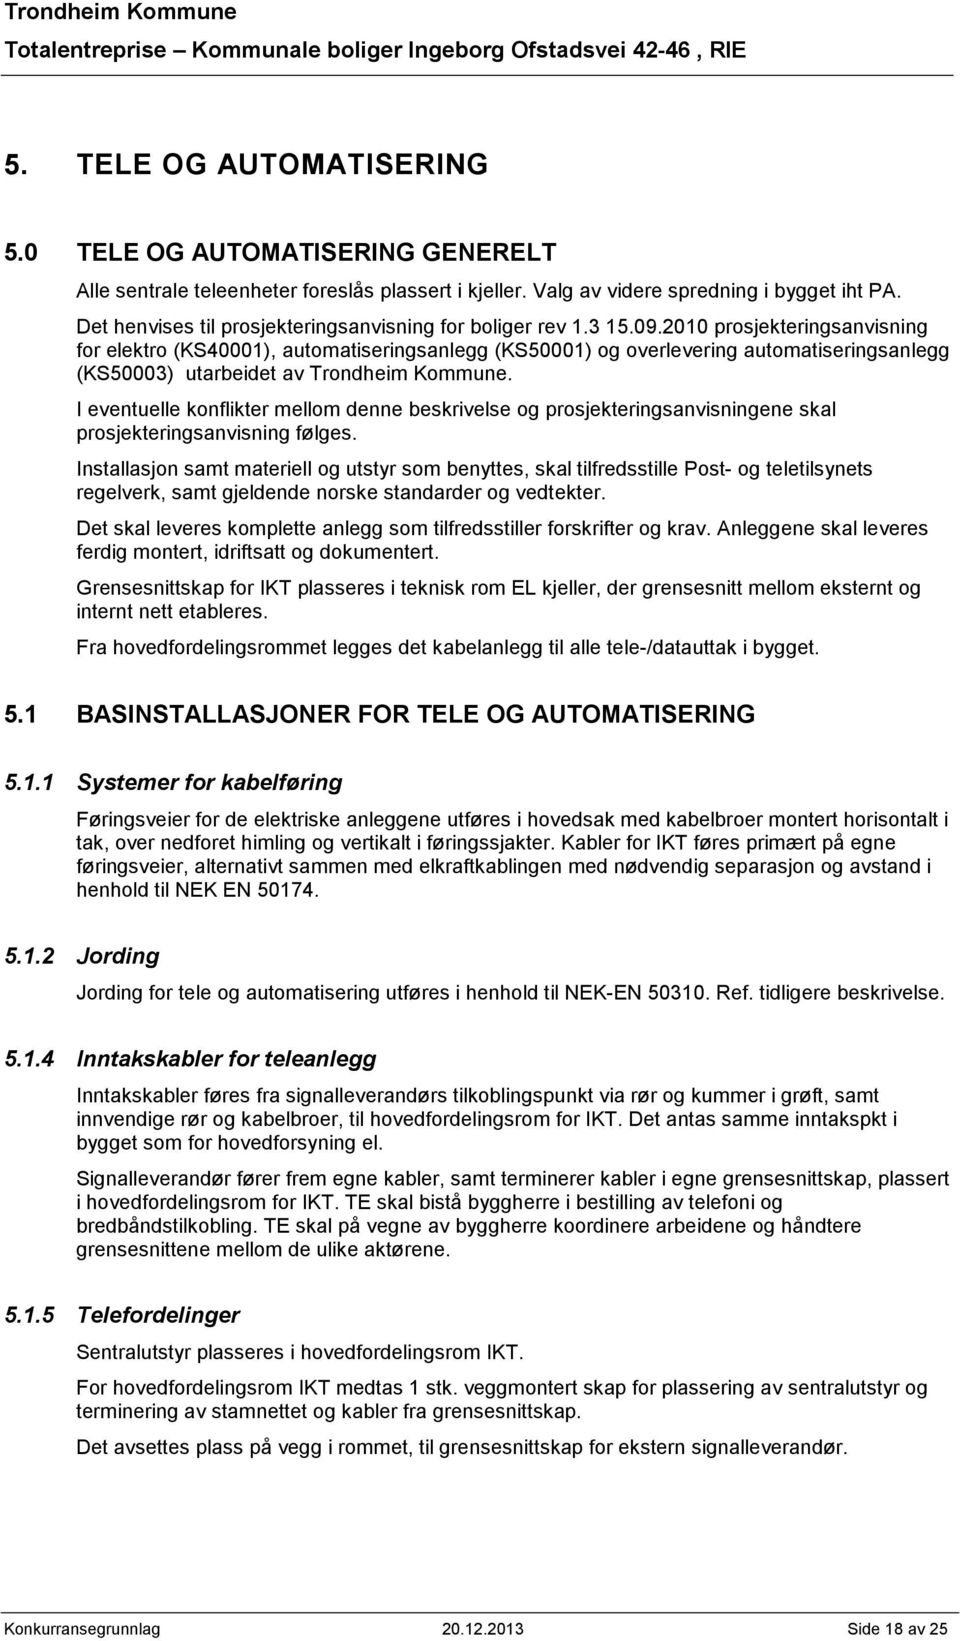 2010 prosjekteringsanvisning for elektro (KS40001), automatiseringsanlegg (KS50001) og overlevering automatiseringsanlegg (KS50003) utarbeidet av Trondheim Kommune.